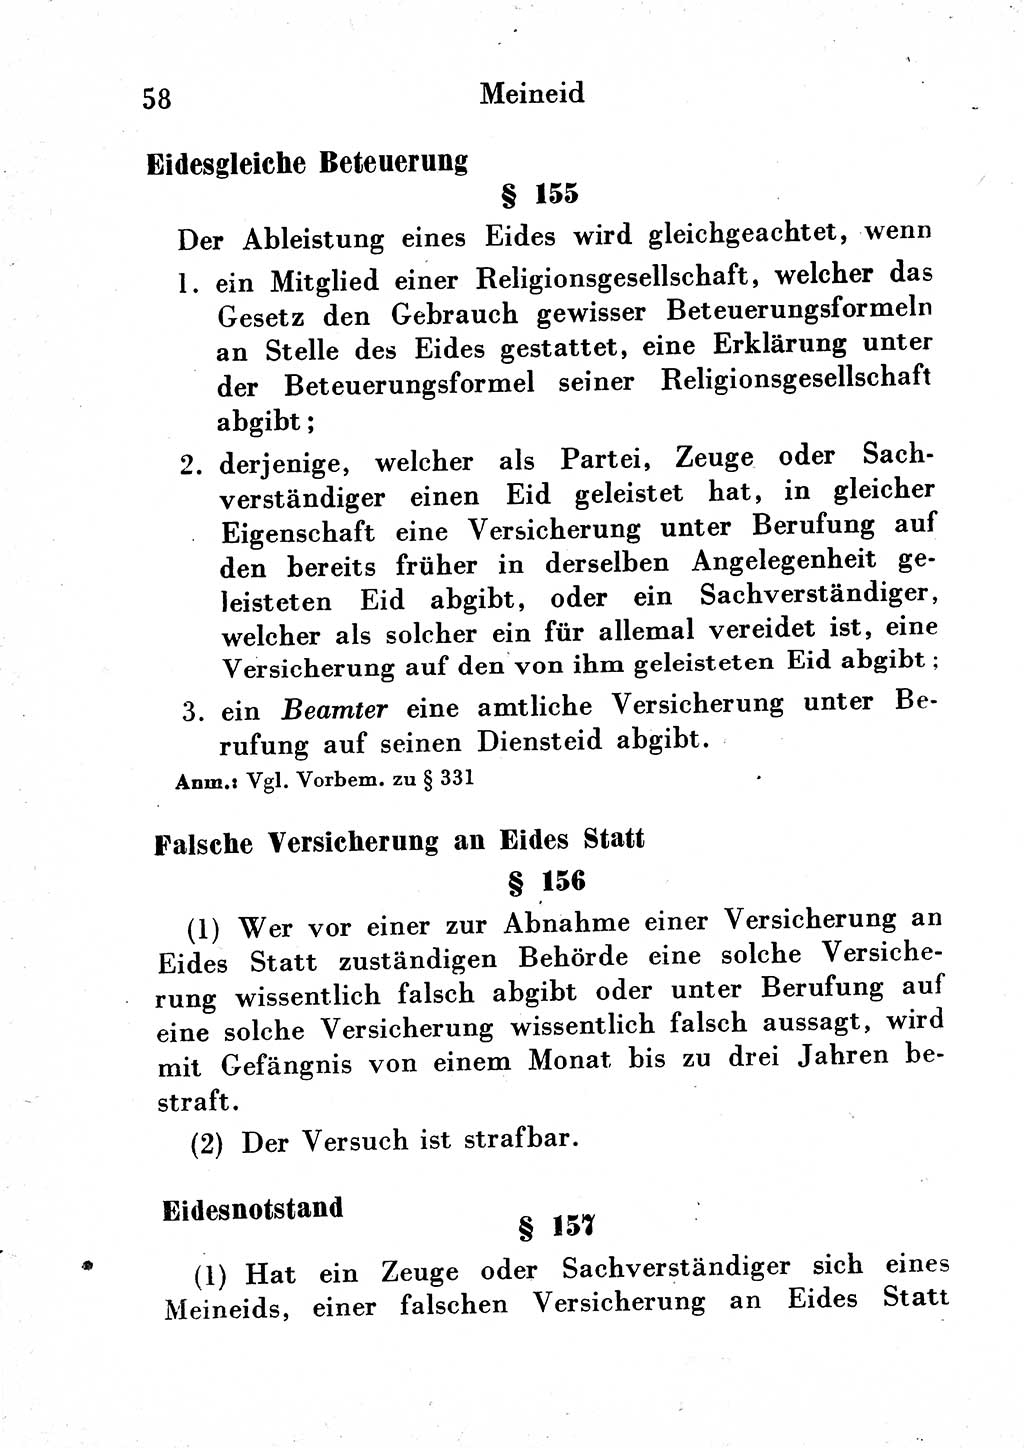 Strafgesetzbuch (StGB) und andere Strafgesetze [Deutsche Demokratische Republik (DDR)] 1954, Seite 58 (StGB Strafges. DDR 1954, S. 58)